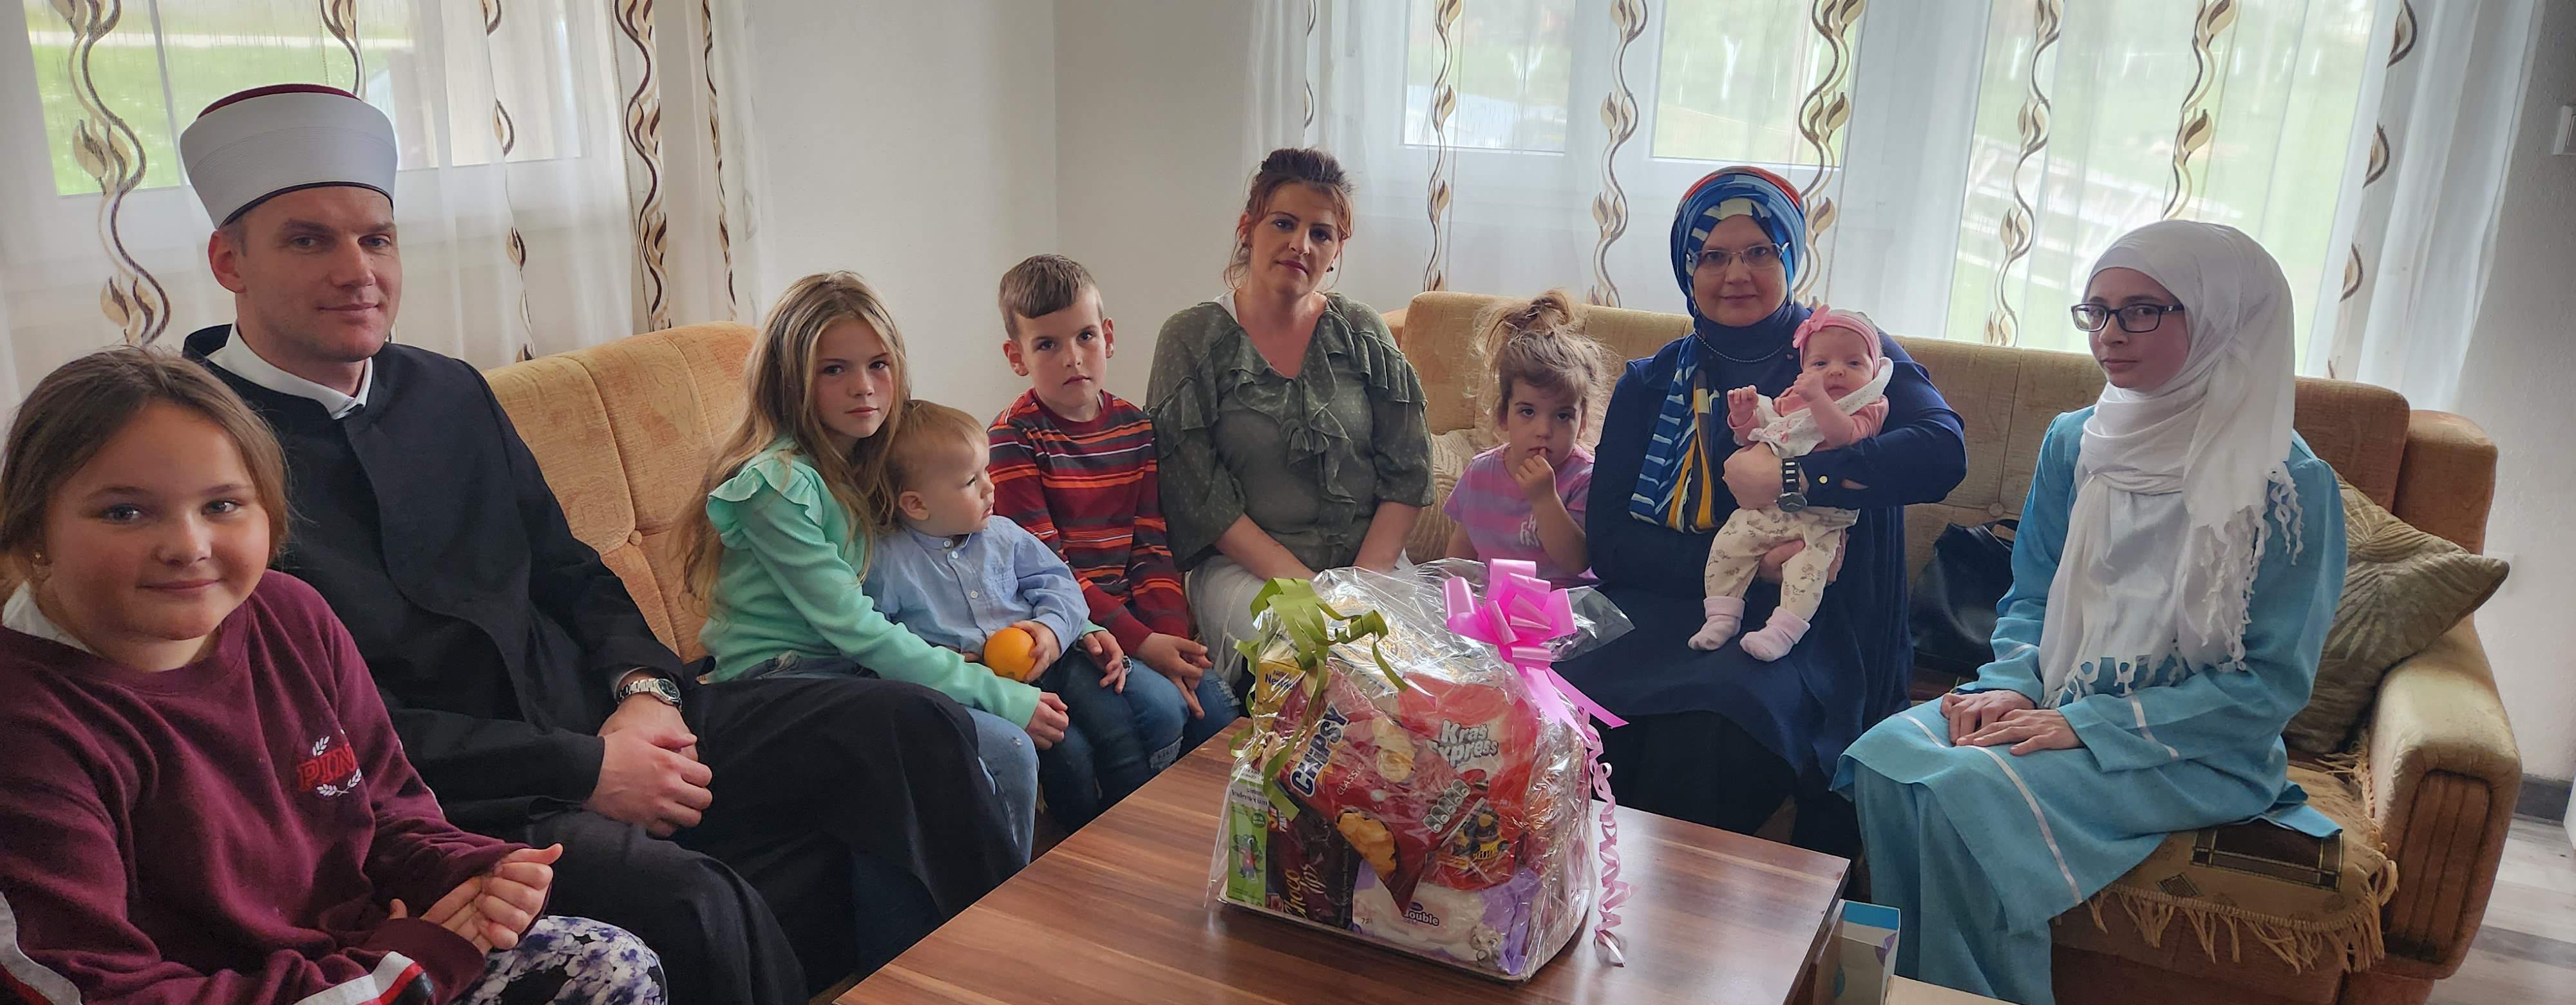 Porodica Velibasic.jpg - Podrška natalitetu: Reisul-ulema darovao pet porodica u Bosanskoj krajini